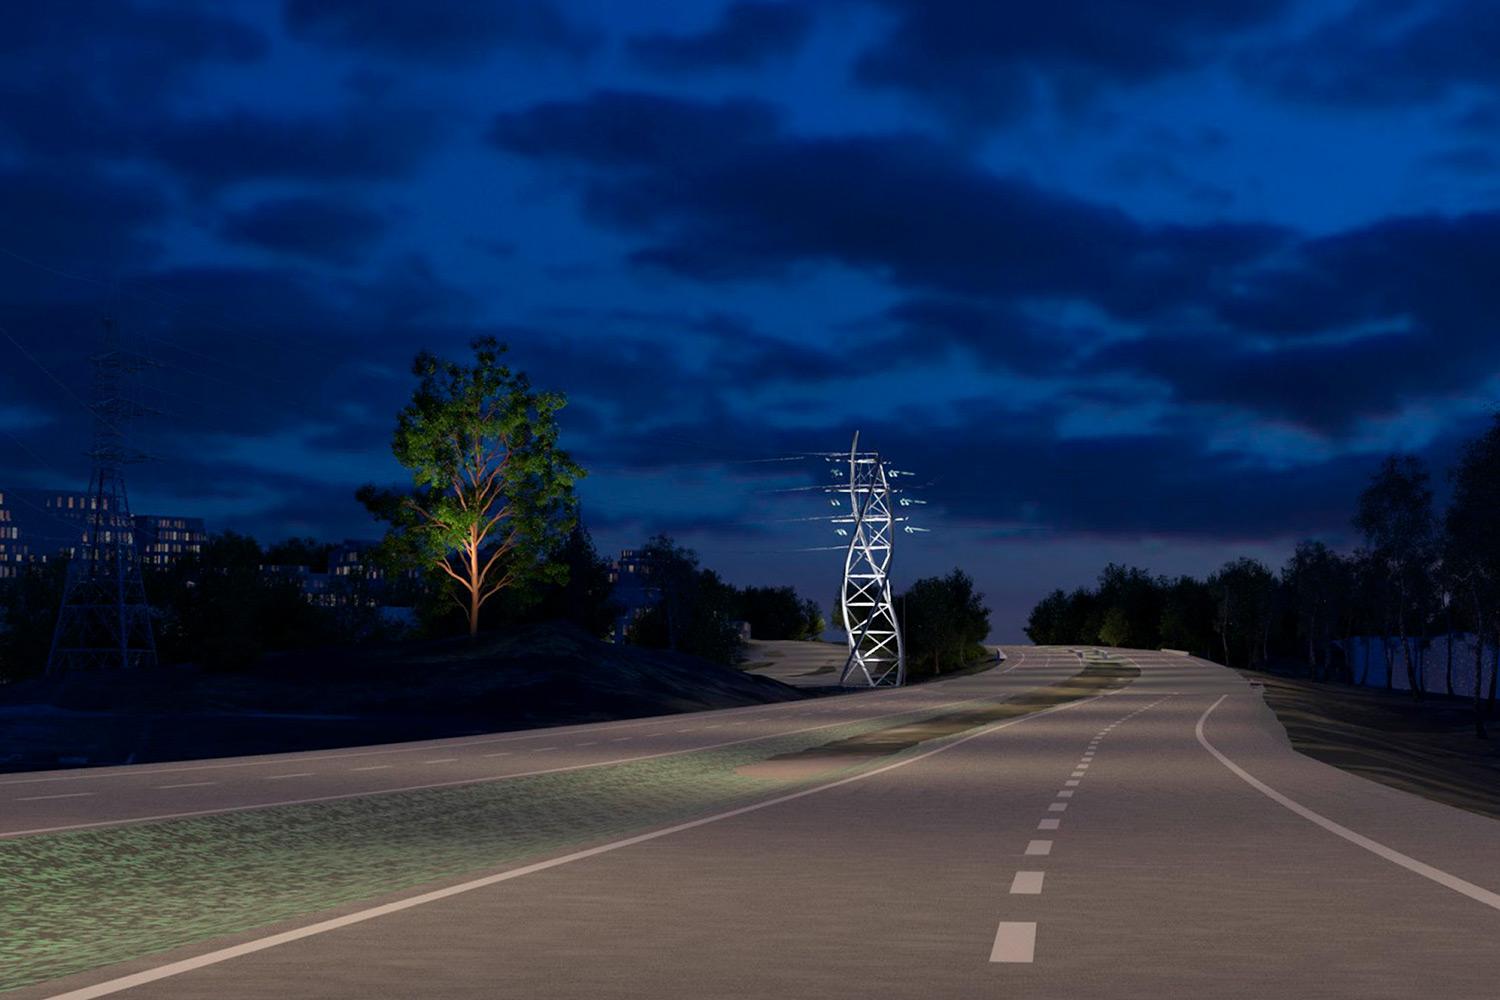 Valaistu Viäntö-niminen maisemapylväs ja vanha mänty loistaa yössä moottoritien varrella.